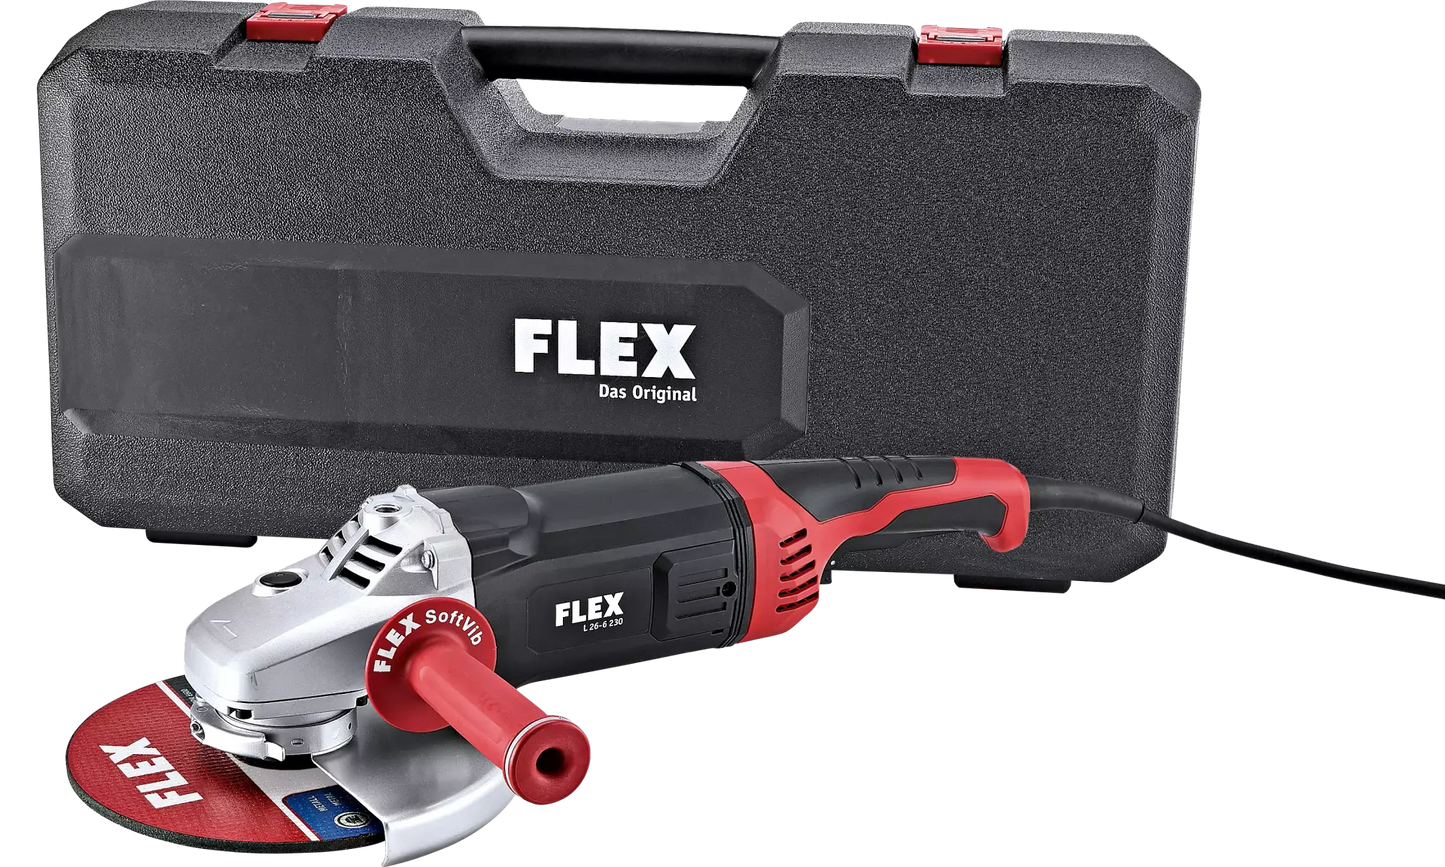 FLEX L 26-6 230 Winkelschleifer 230mm,2600Watt